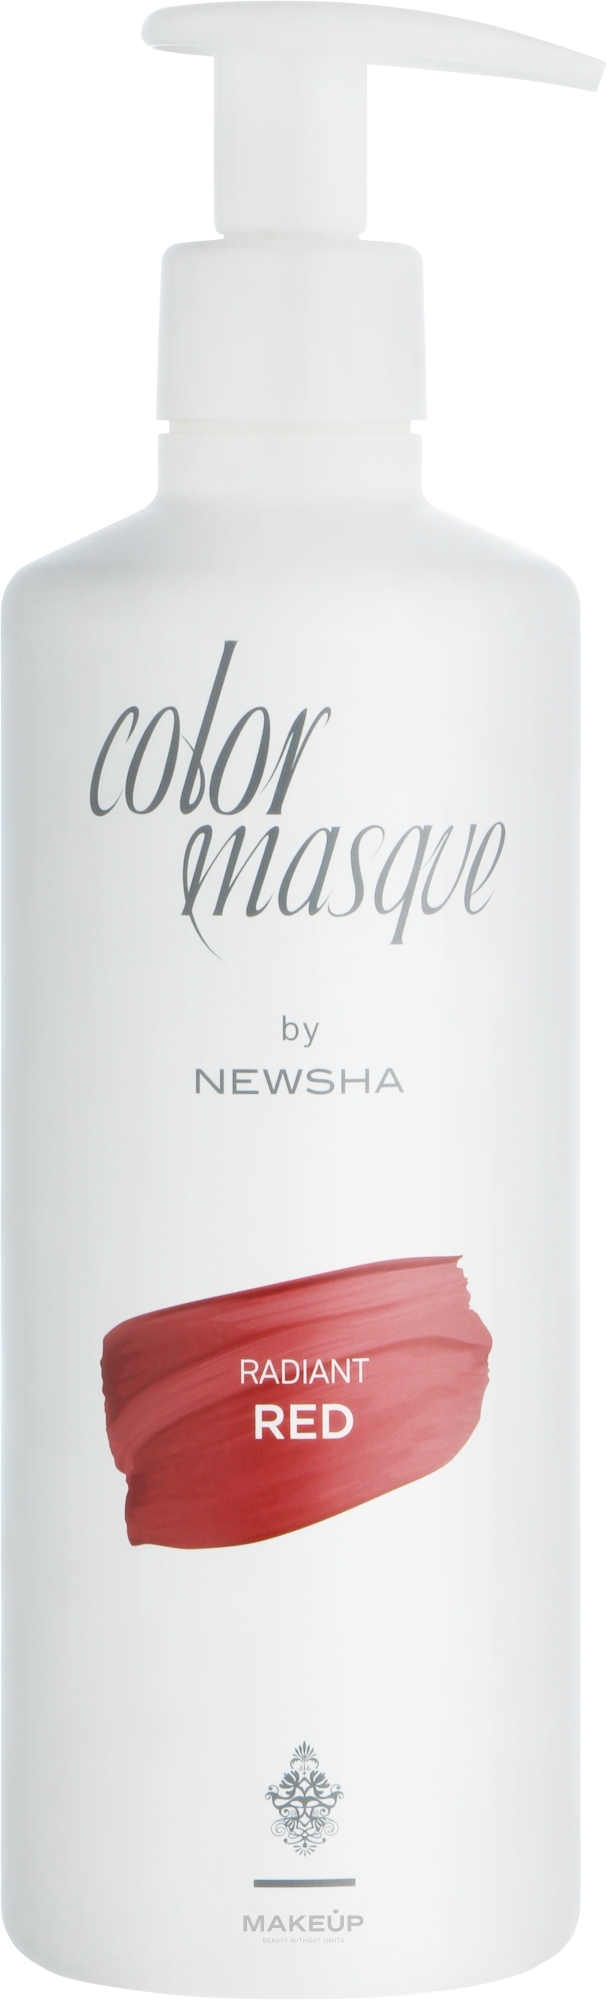 Цветная маска для волос - Newsha Color Masque Radiant Red — фото 500ml